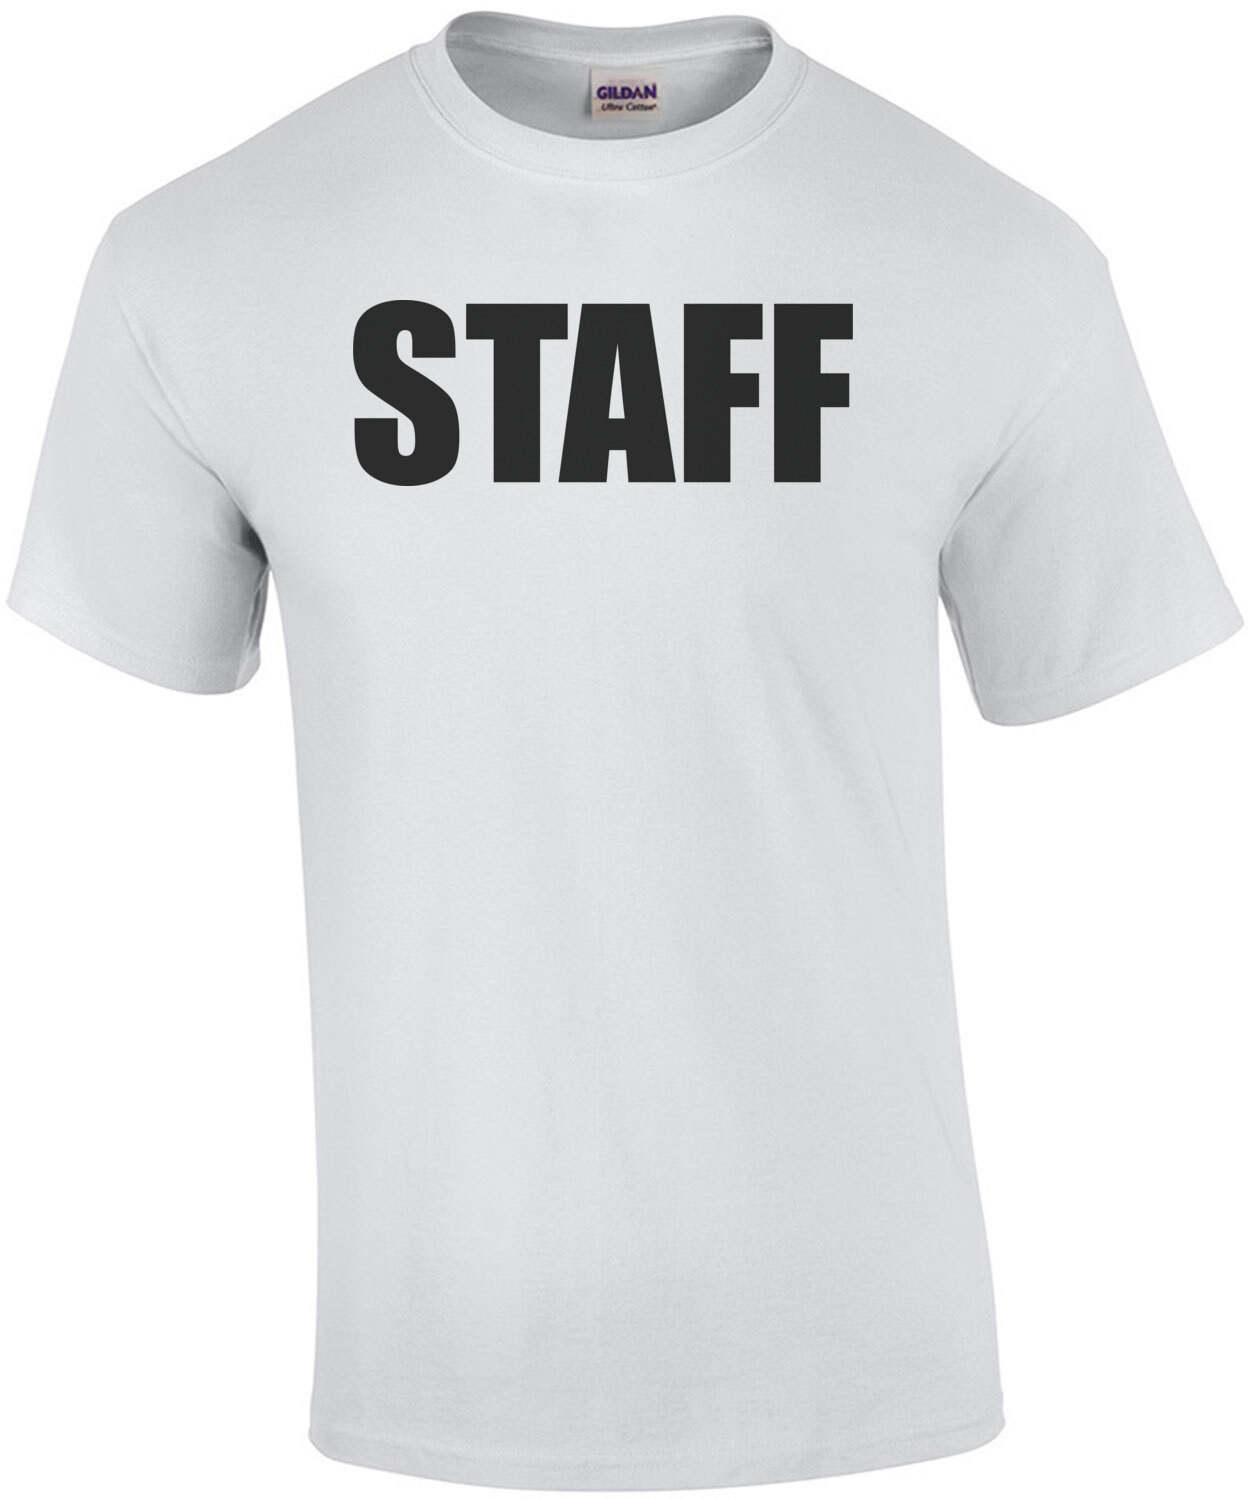 STAFF (Black Text) T-Shirt